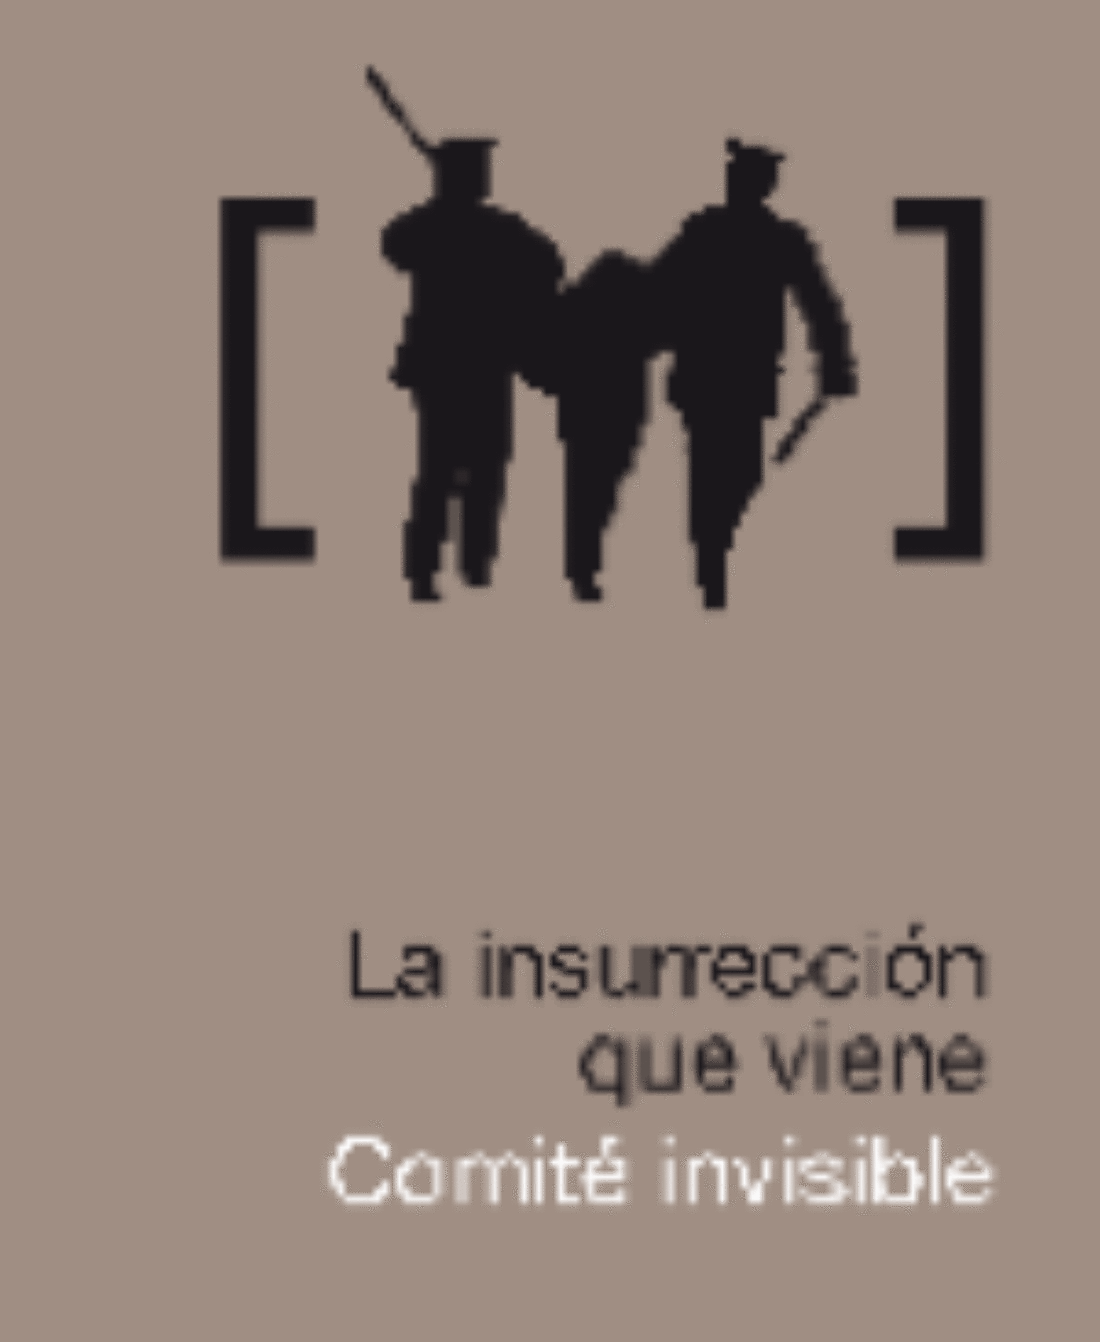 26-27 enero, Madrid : En torno a «La Insurrección de Viene» del Comité Invisible